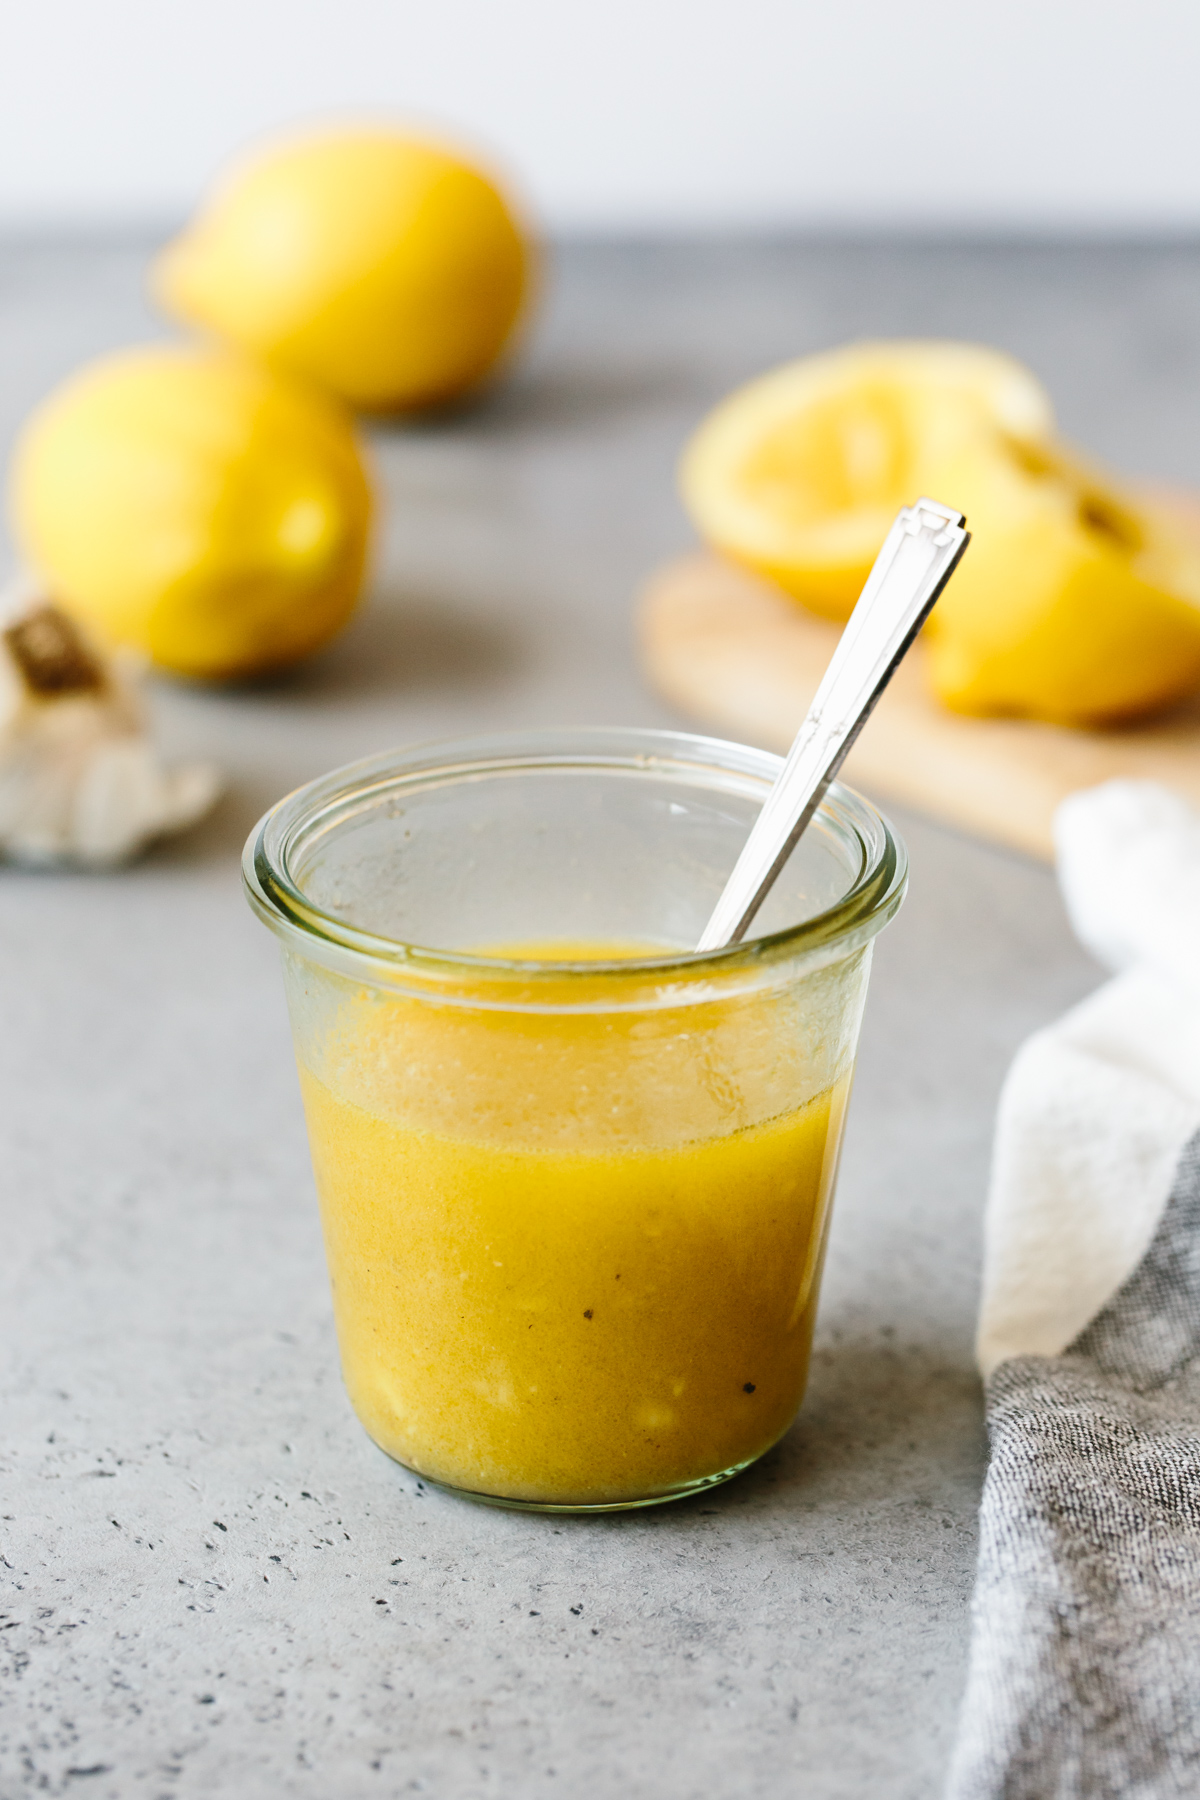 Lemon vinaigrette in a glass jar, with lemons in the background.